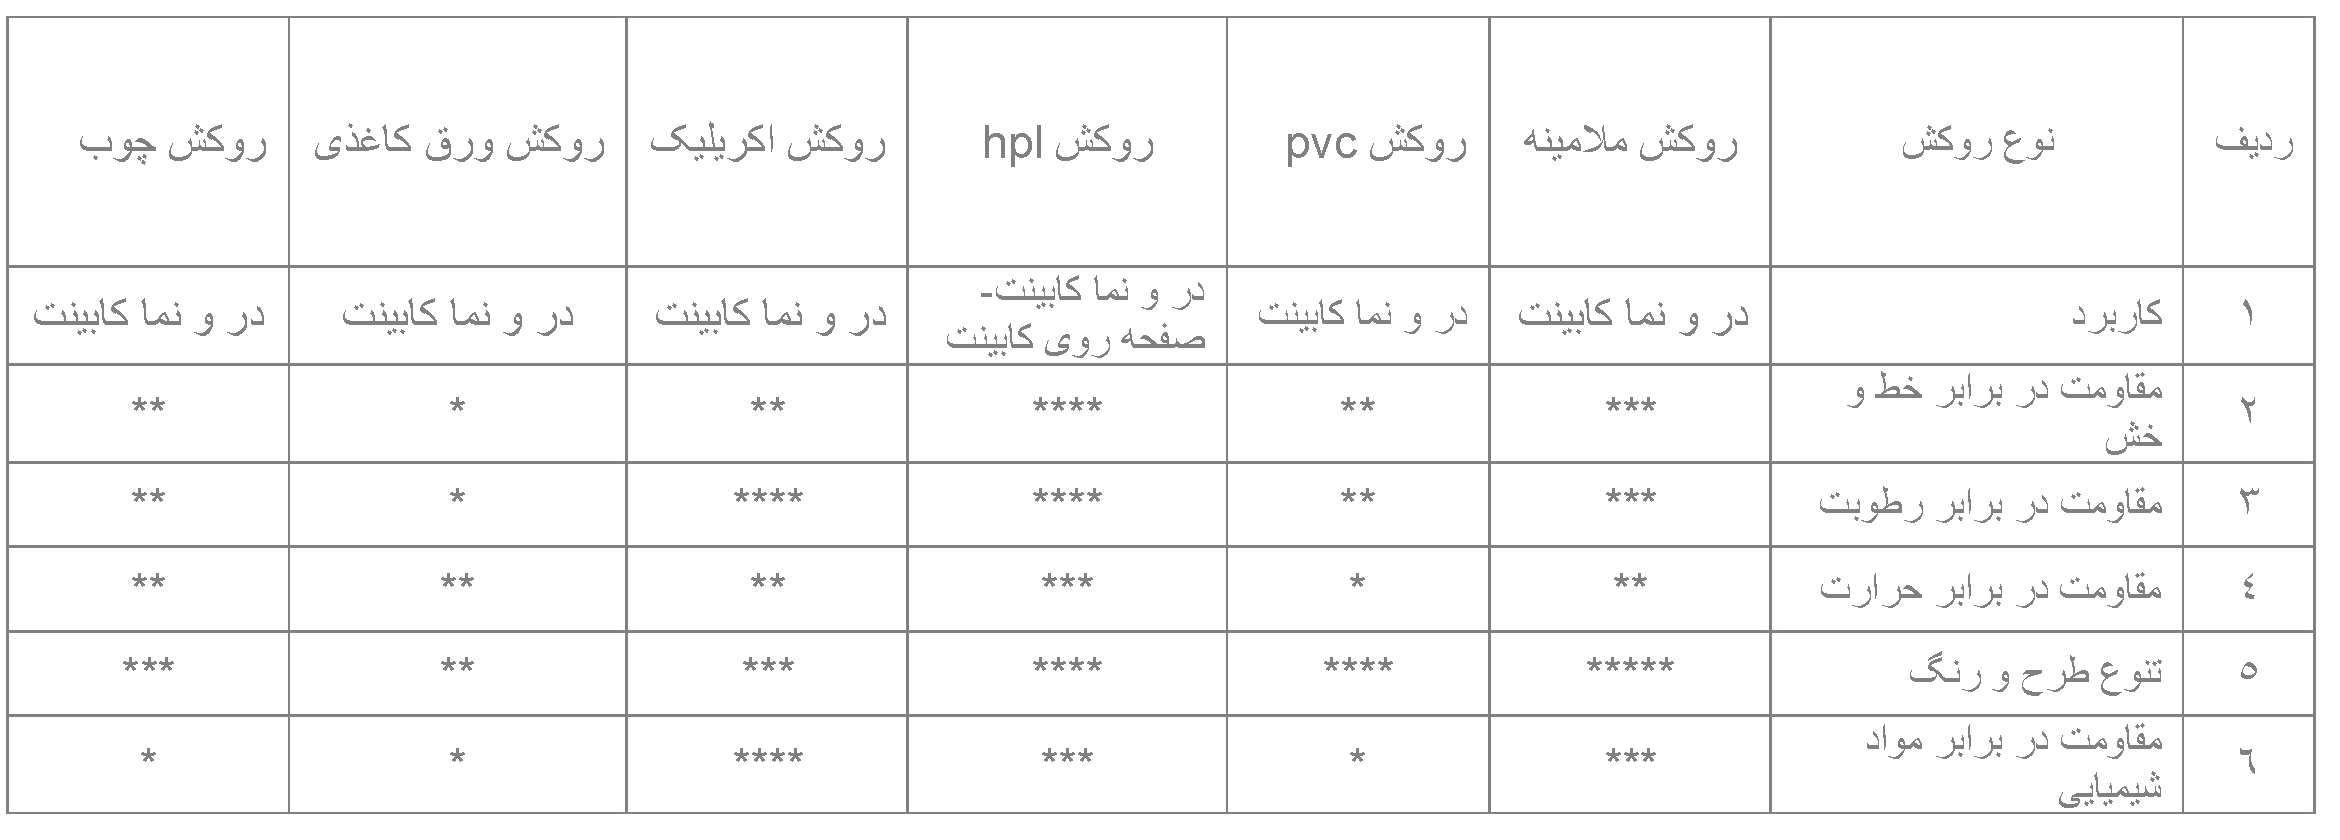 جدول مقایسه روکش های کاربردی در نماها و درهای کابینت آشپزخانه